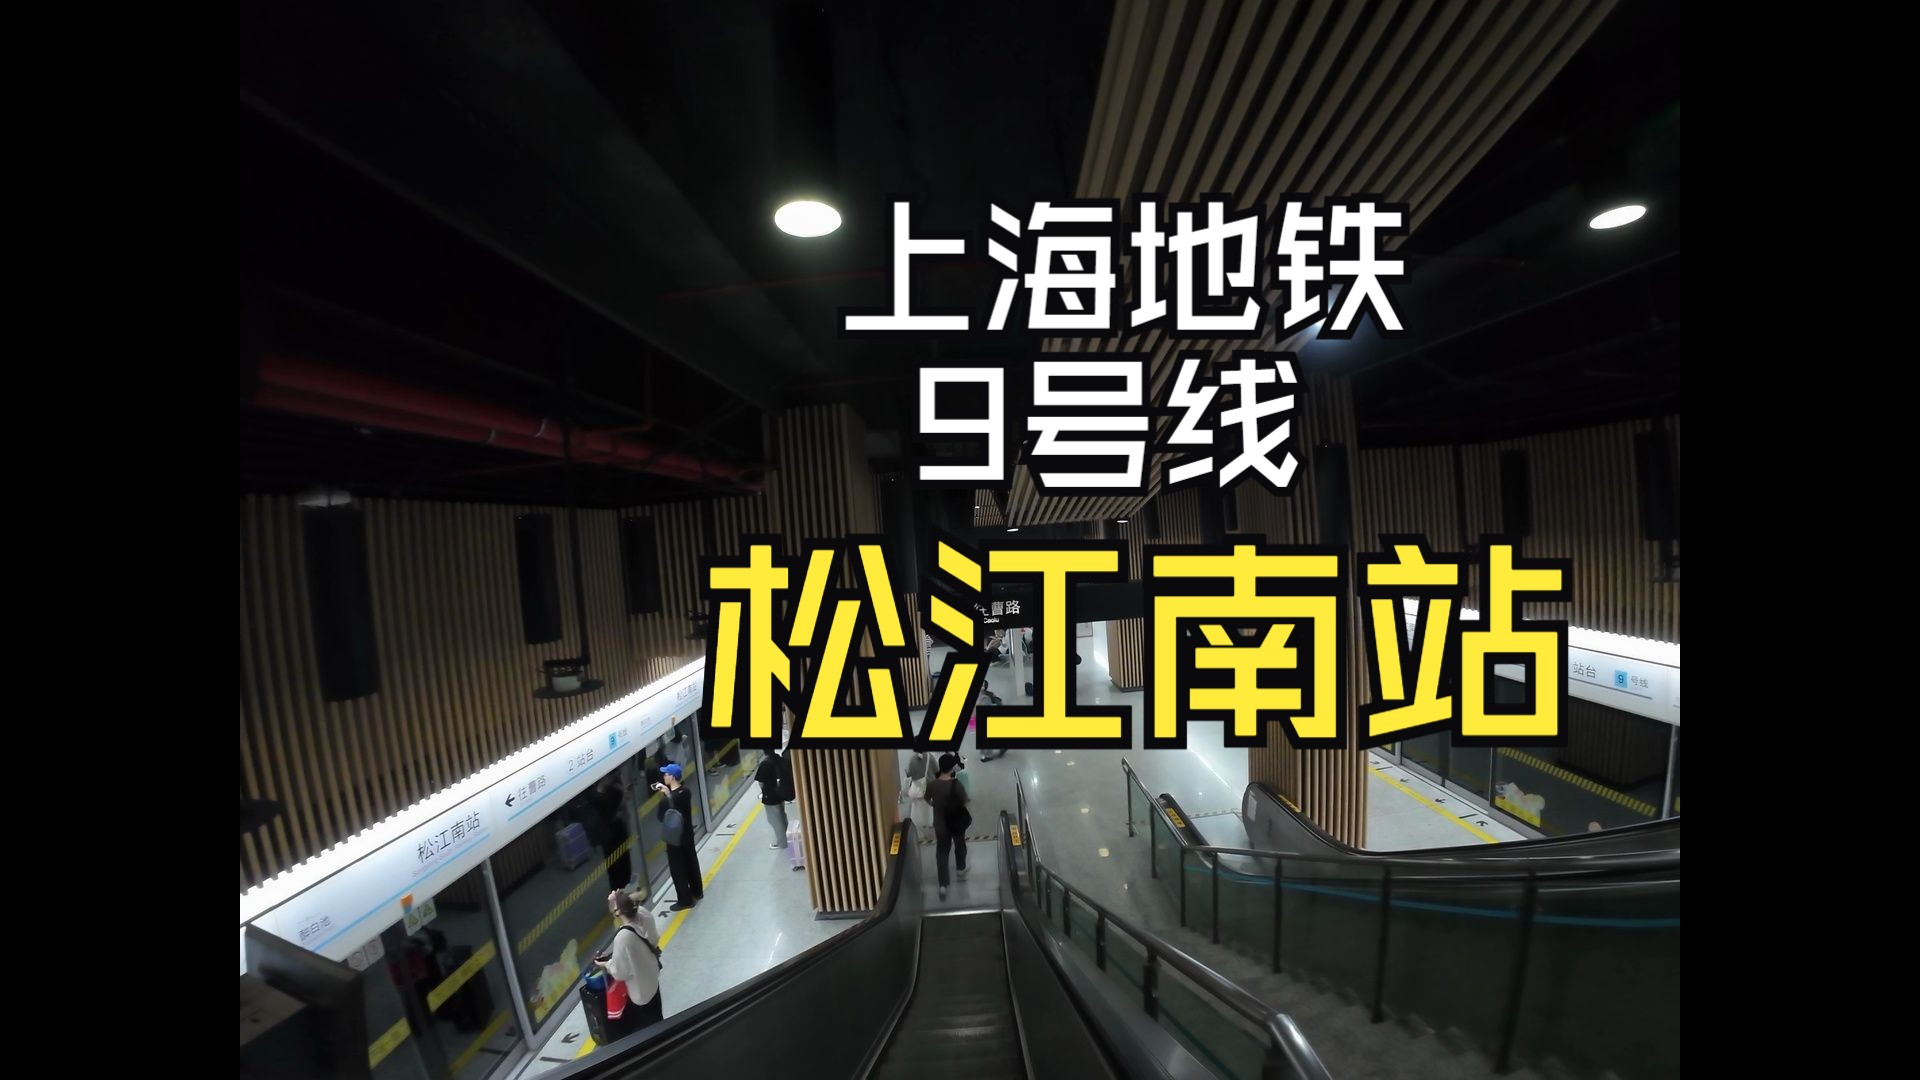 【上海地铁】9号线运转pov 最后的松江南站 七宝